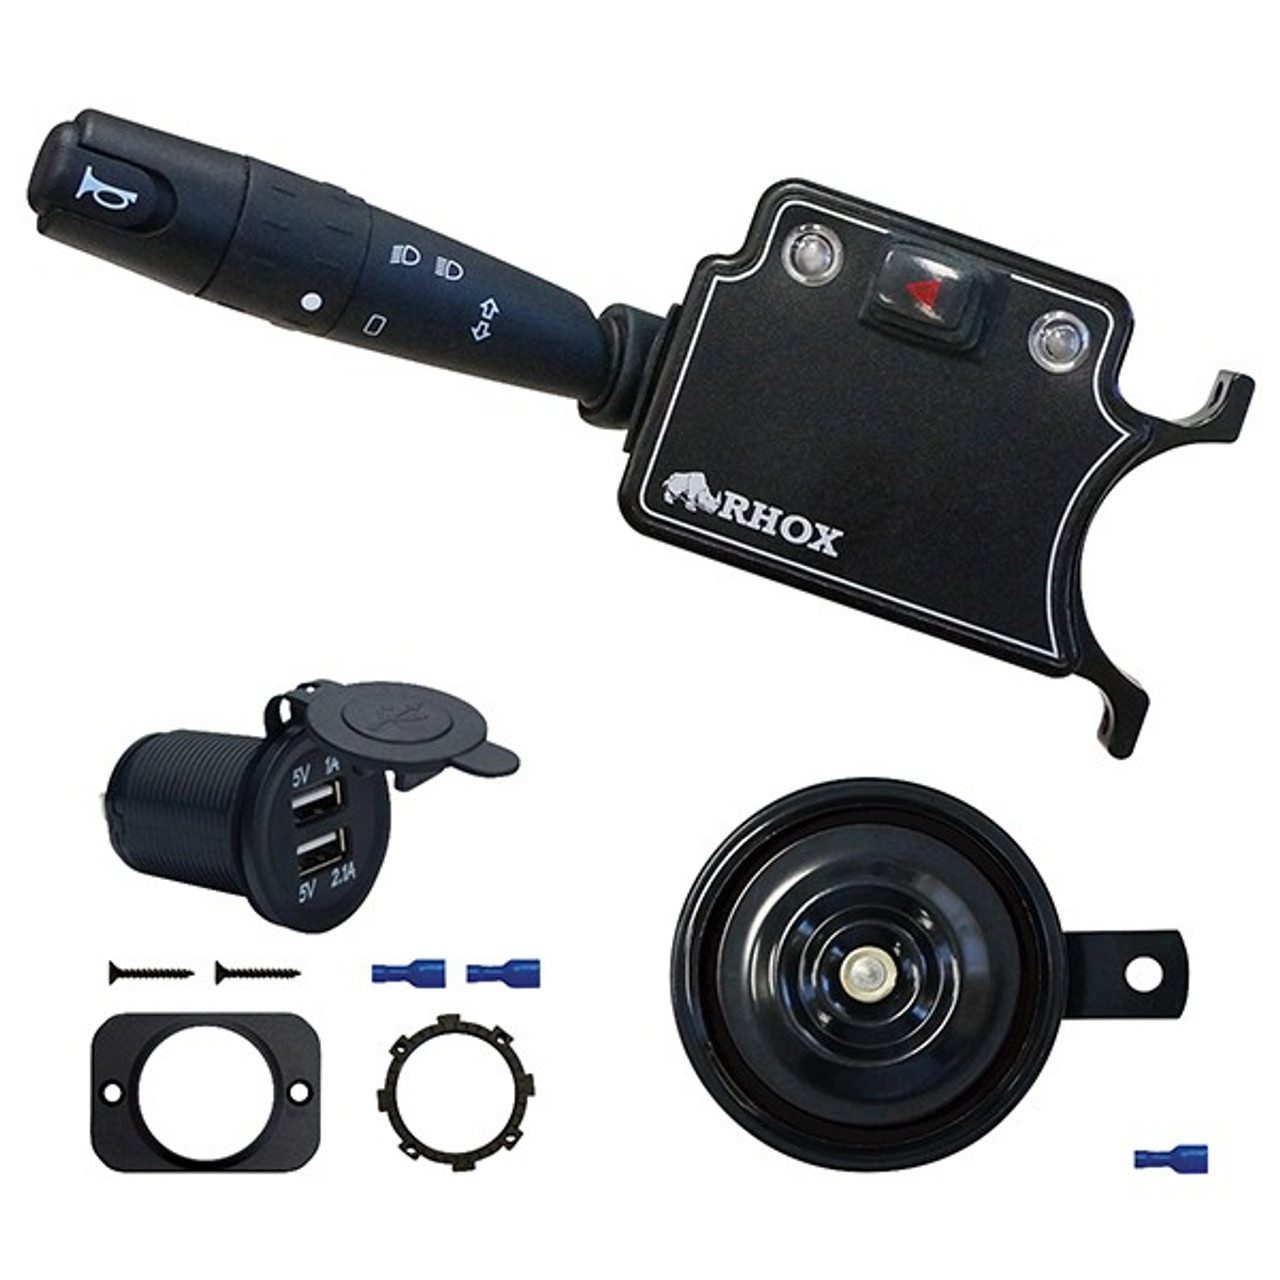 Deluxe LED Adjustable Light Kit for E-Z-Go TXT 2014-Up Golf Cart, LGT-301LT3B10